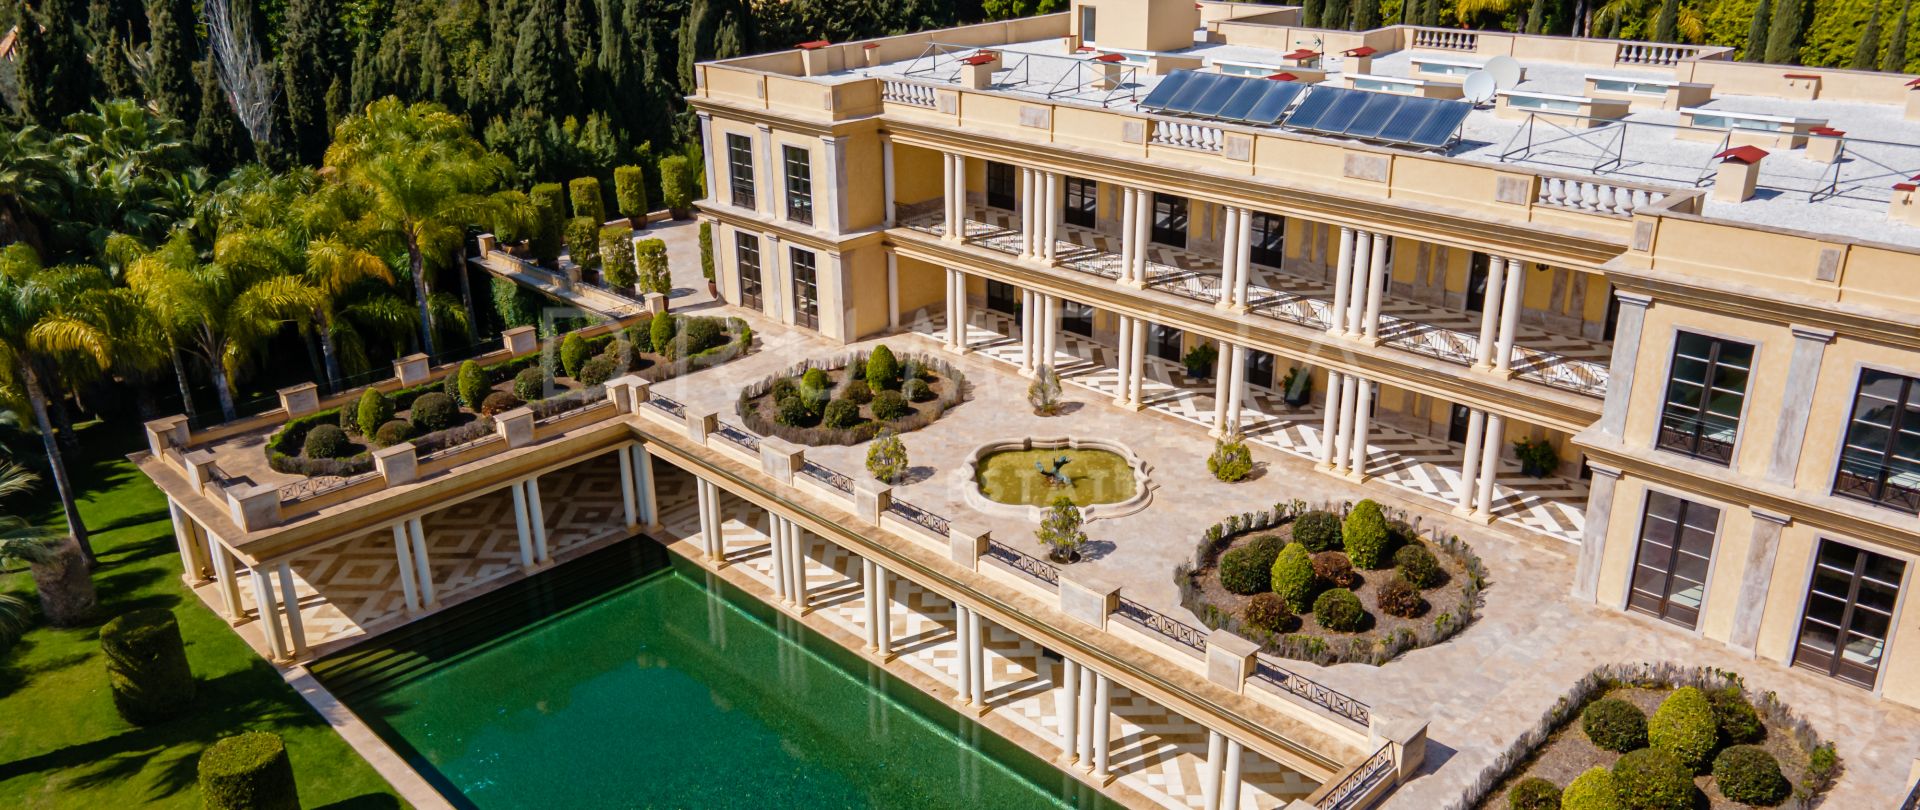 La Favorita - Gran villa palaciega única, Rocío de Nagüeles, Milla de Oro, Marbella